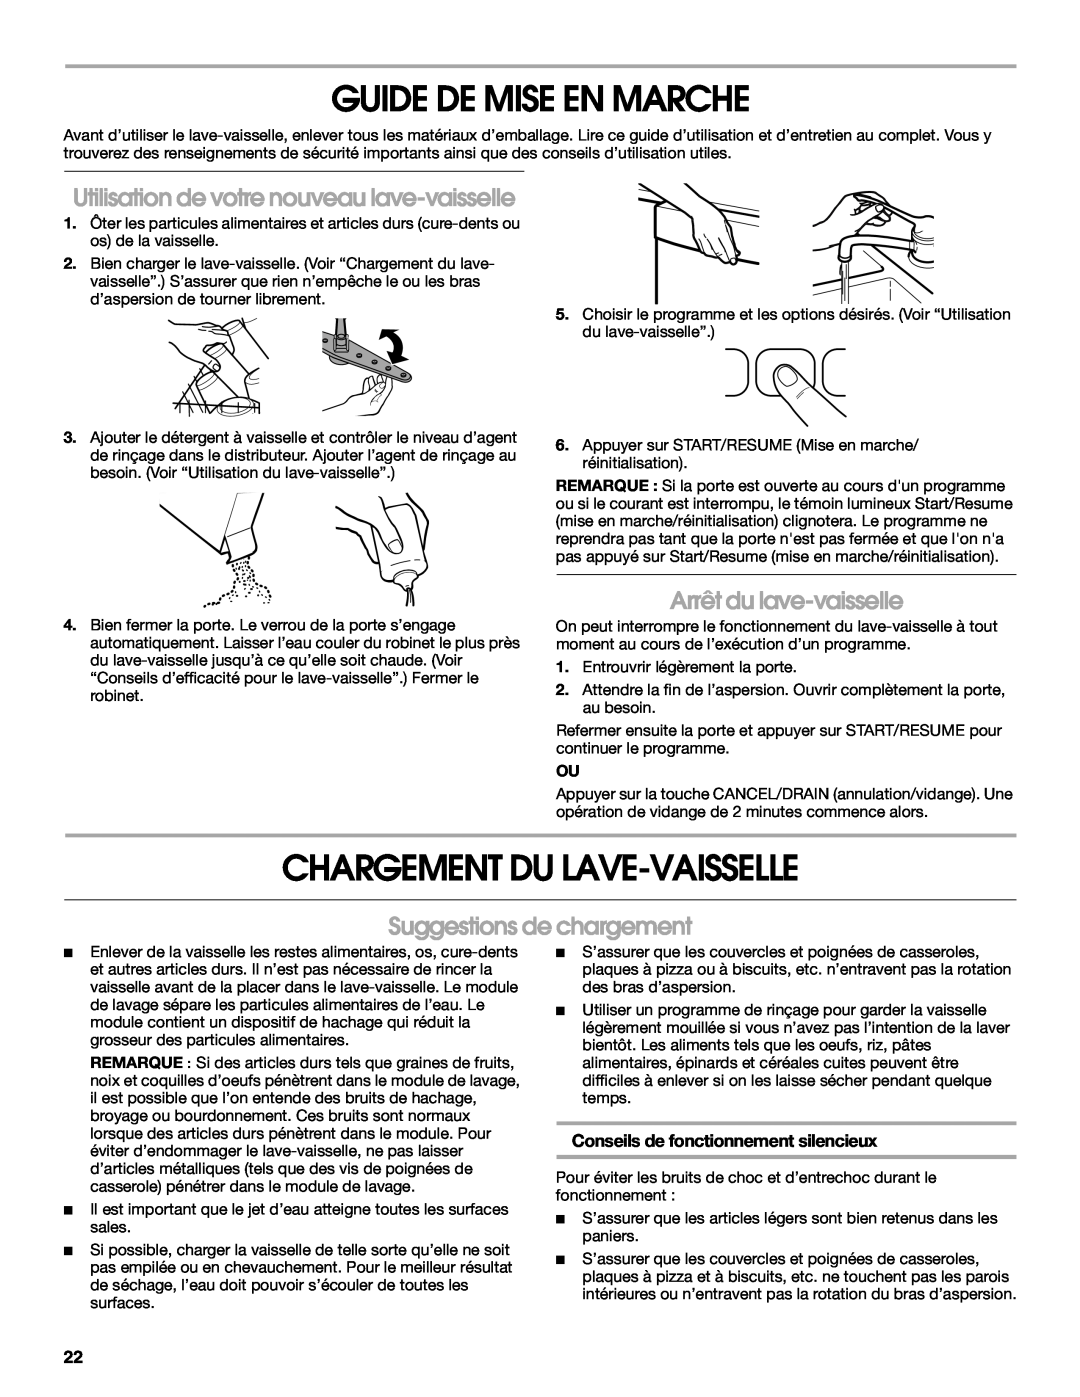 Roper RUD8000S manual Guide De Mise En Marche, Chargement Du Lave-Vaisselle, Utilisation de votre nouveau lave-vaisselle 